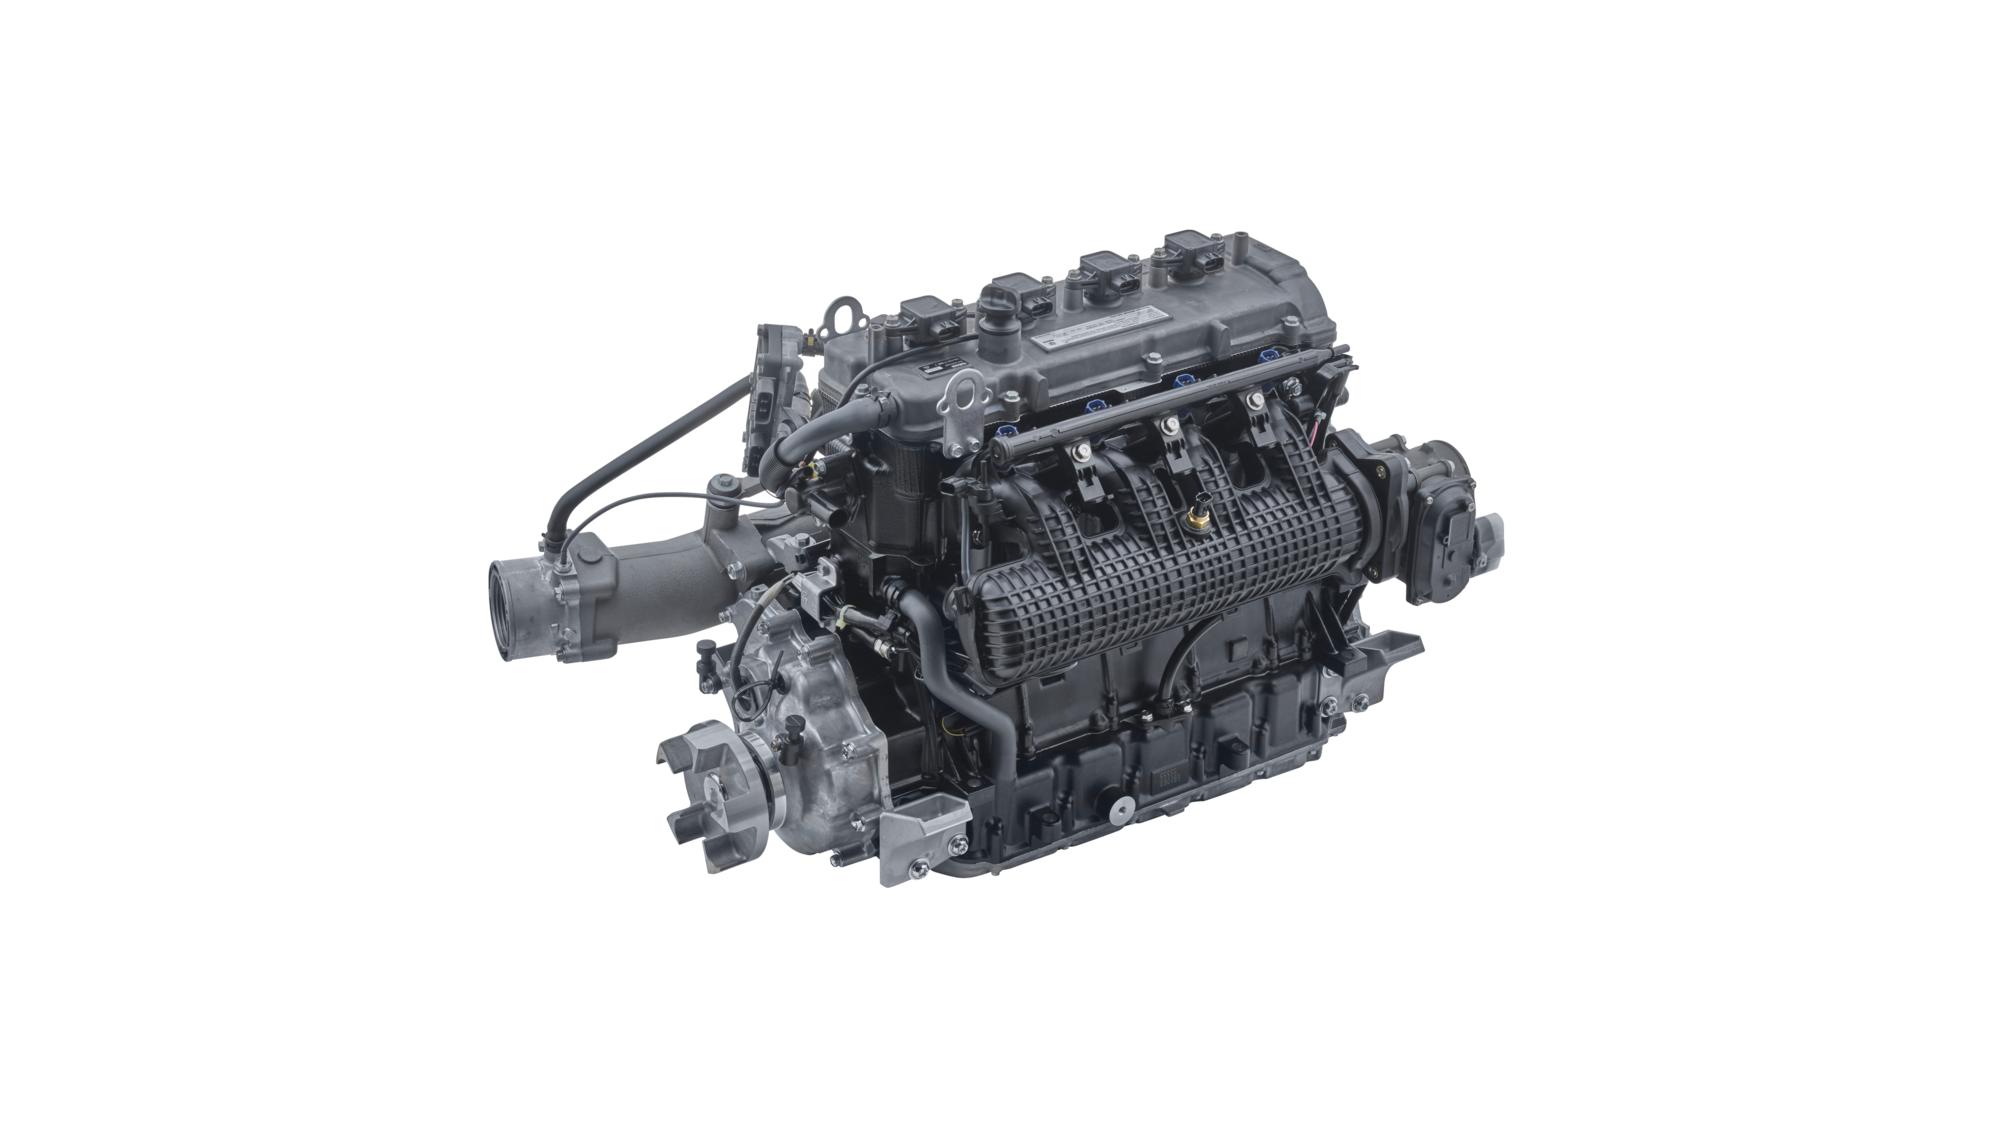 Snažni DOHC četvorotaktni motor sa 16 ventila i zapreminom od 1,8 l